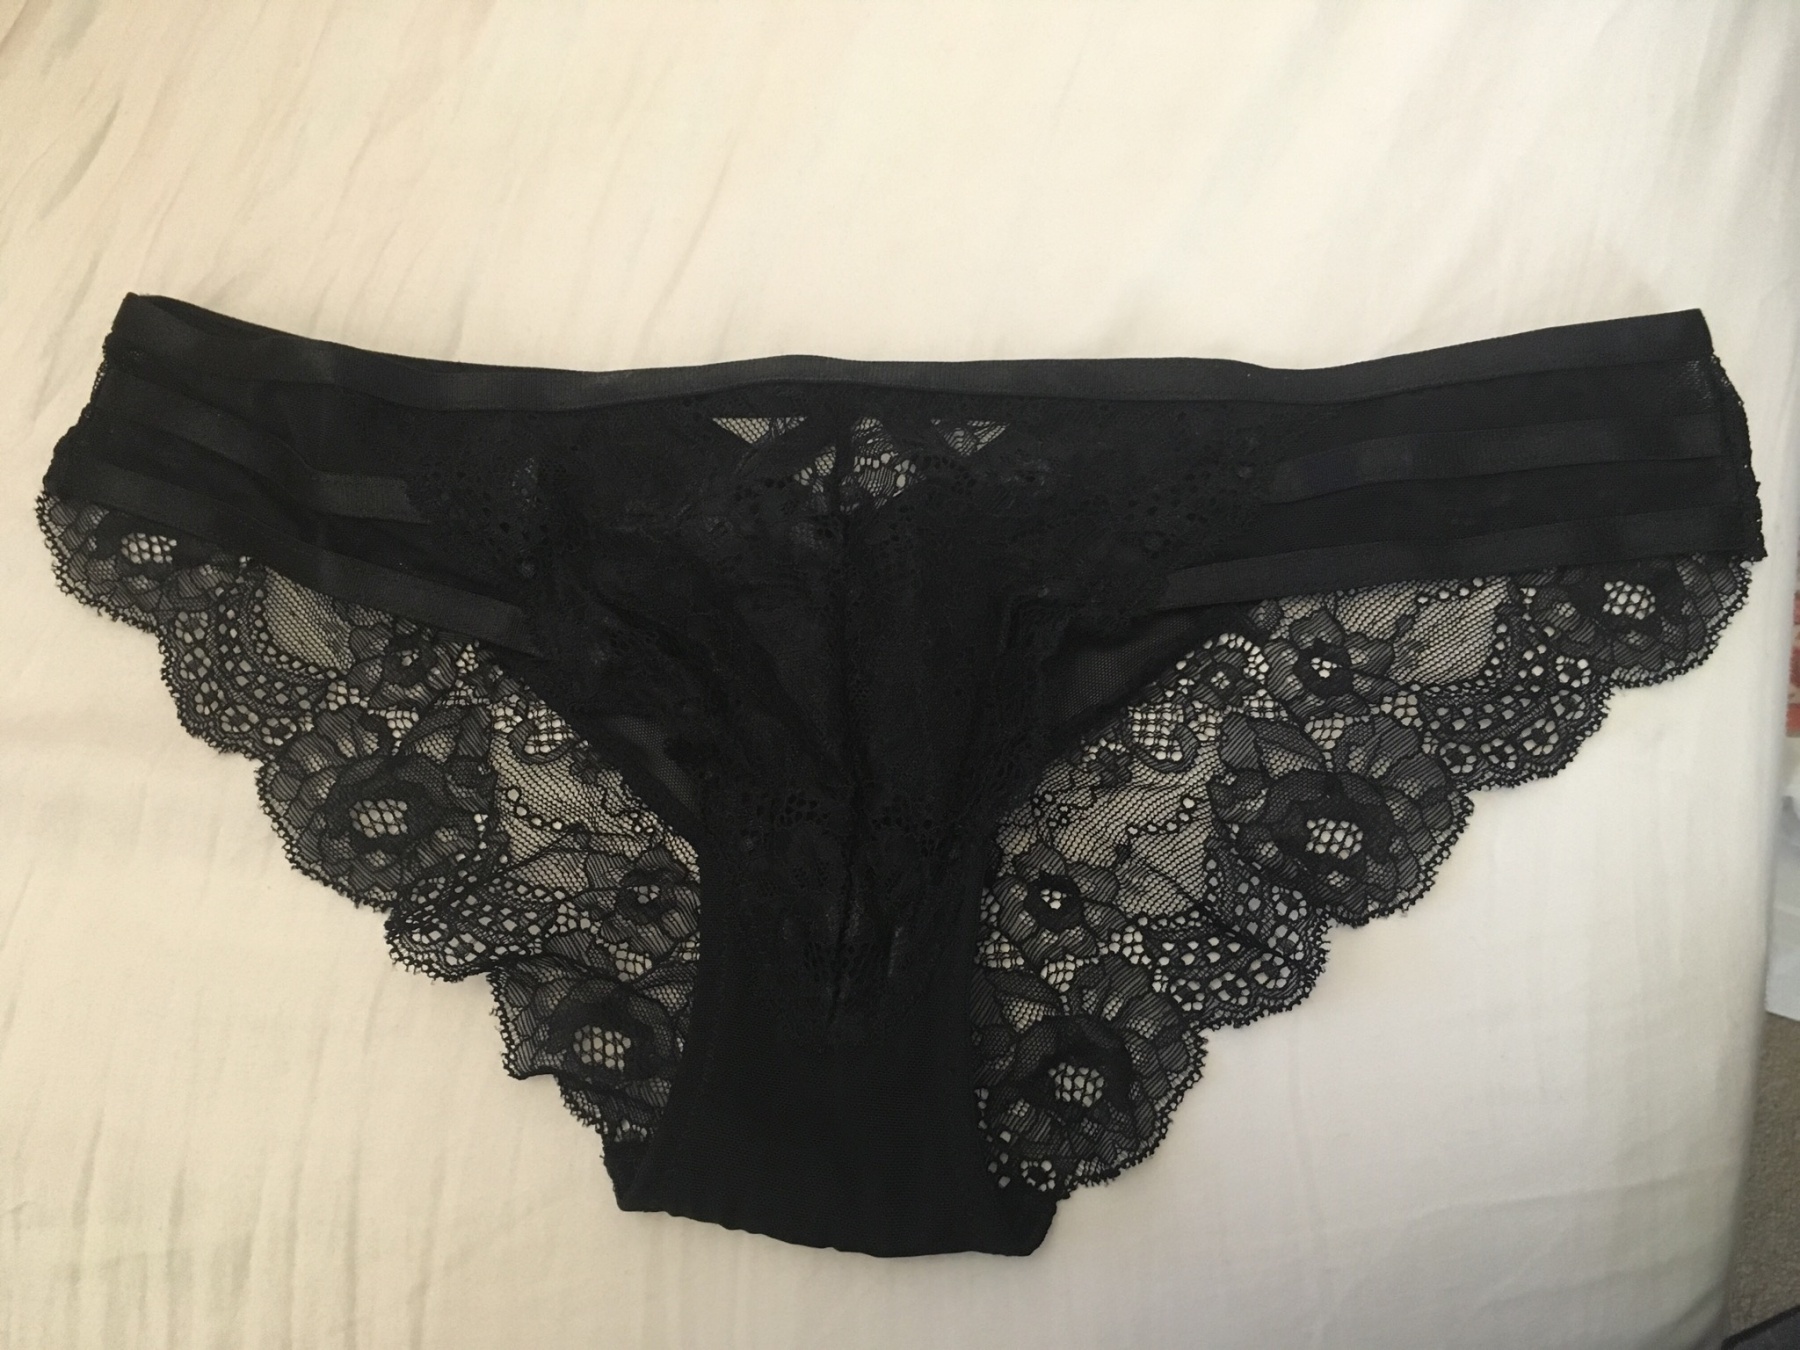 Black lingerie panties | Myusedpantystore.com